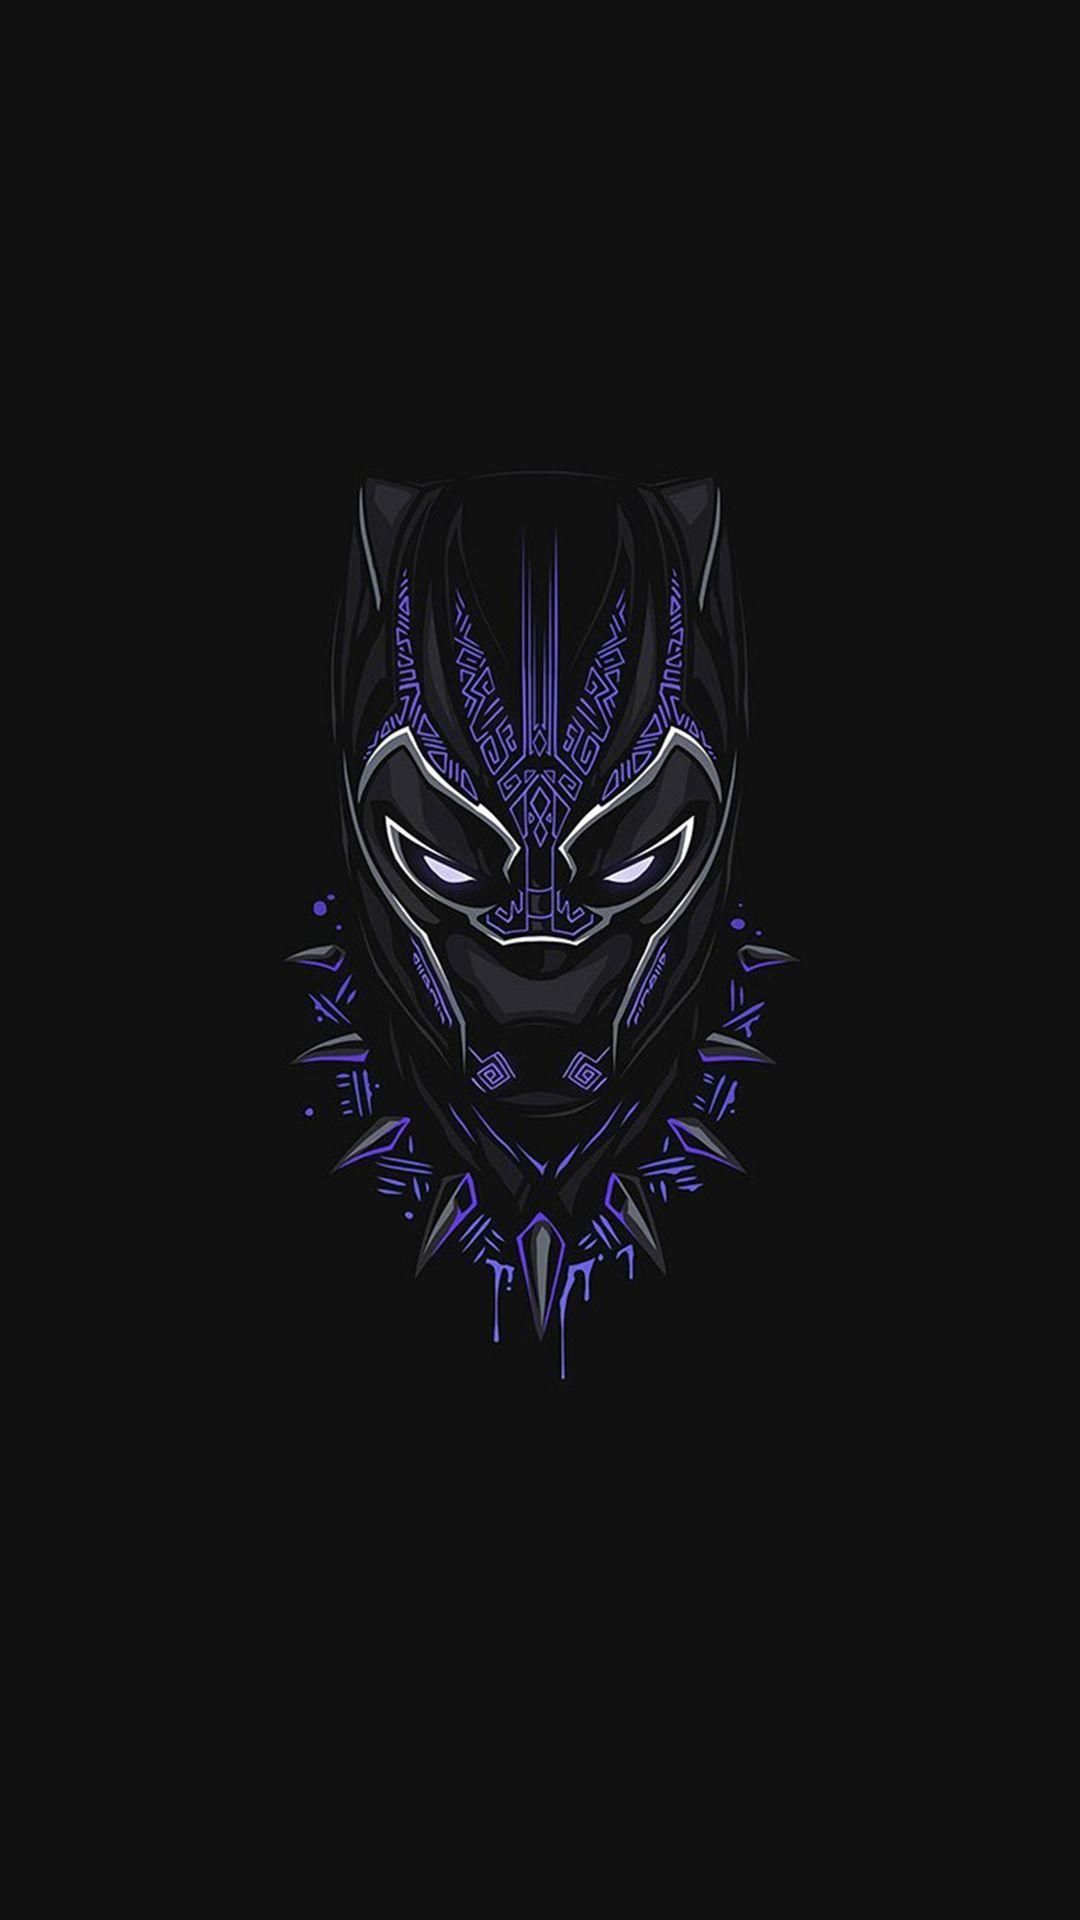 Black Panther Marvel Phone Wallpaper Free Black Panther